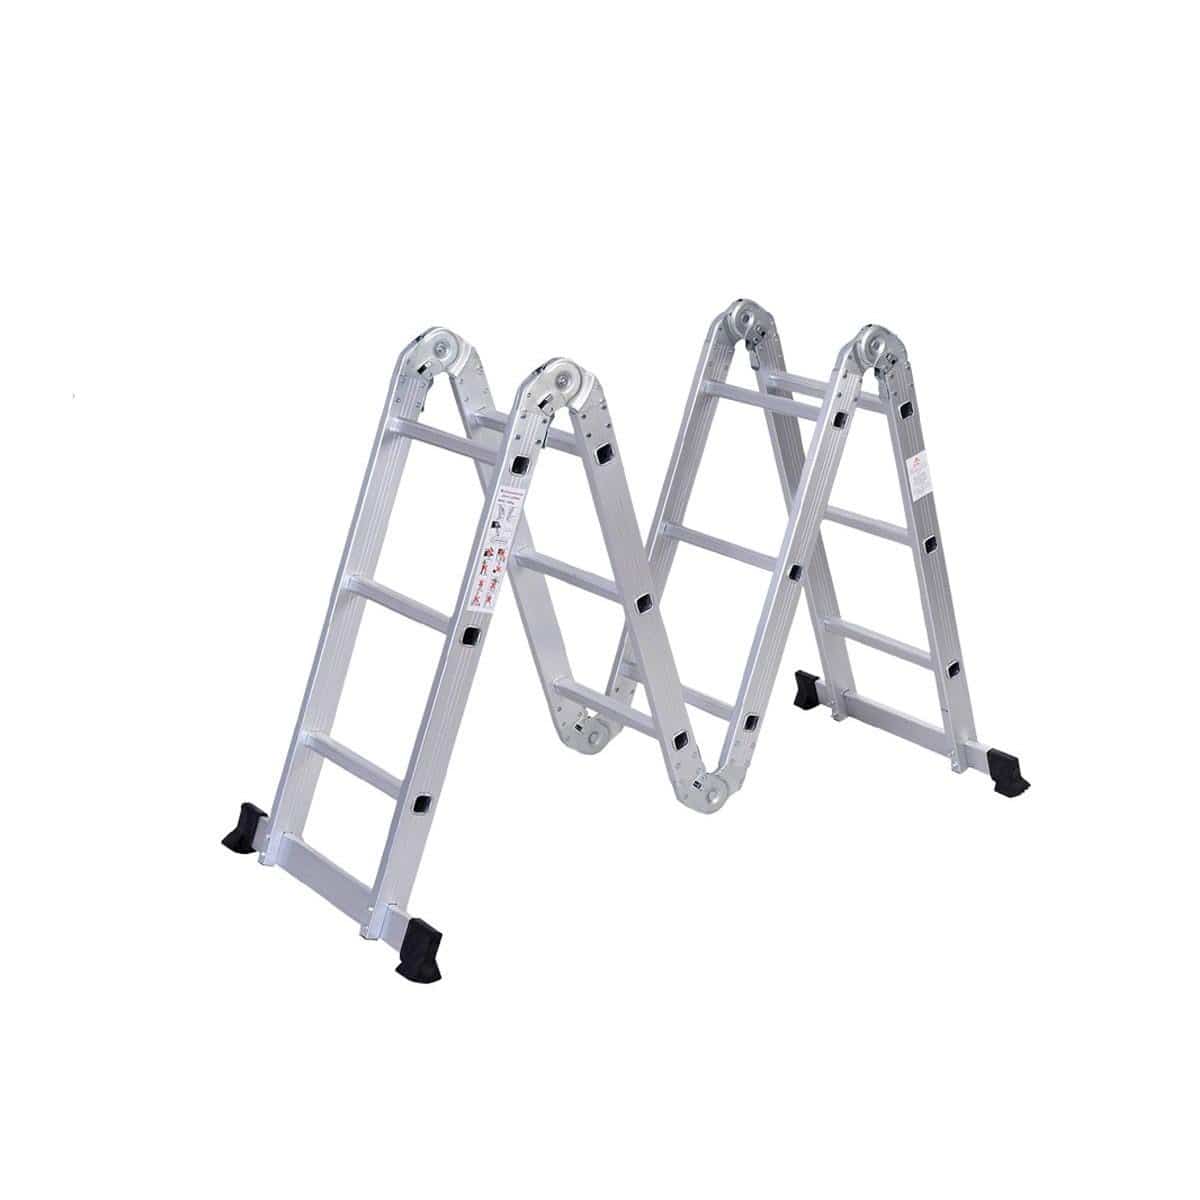 SUMO KING Heavy Duty Multi Purpose Ladder Flat Foot (10 STEPS)